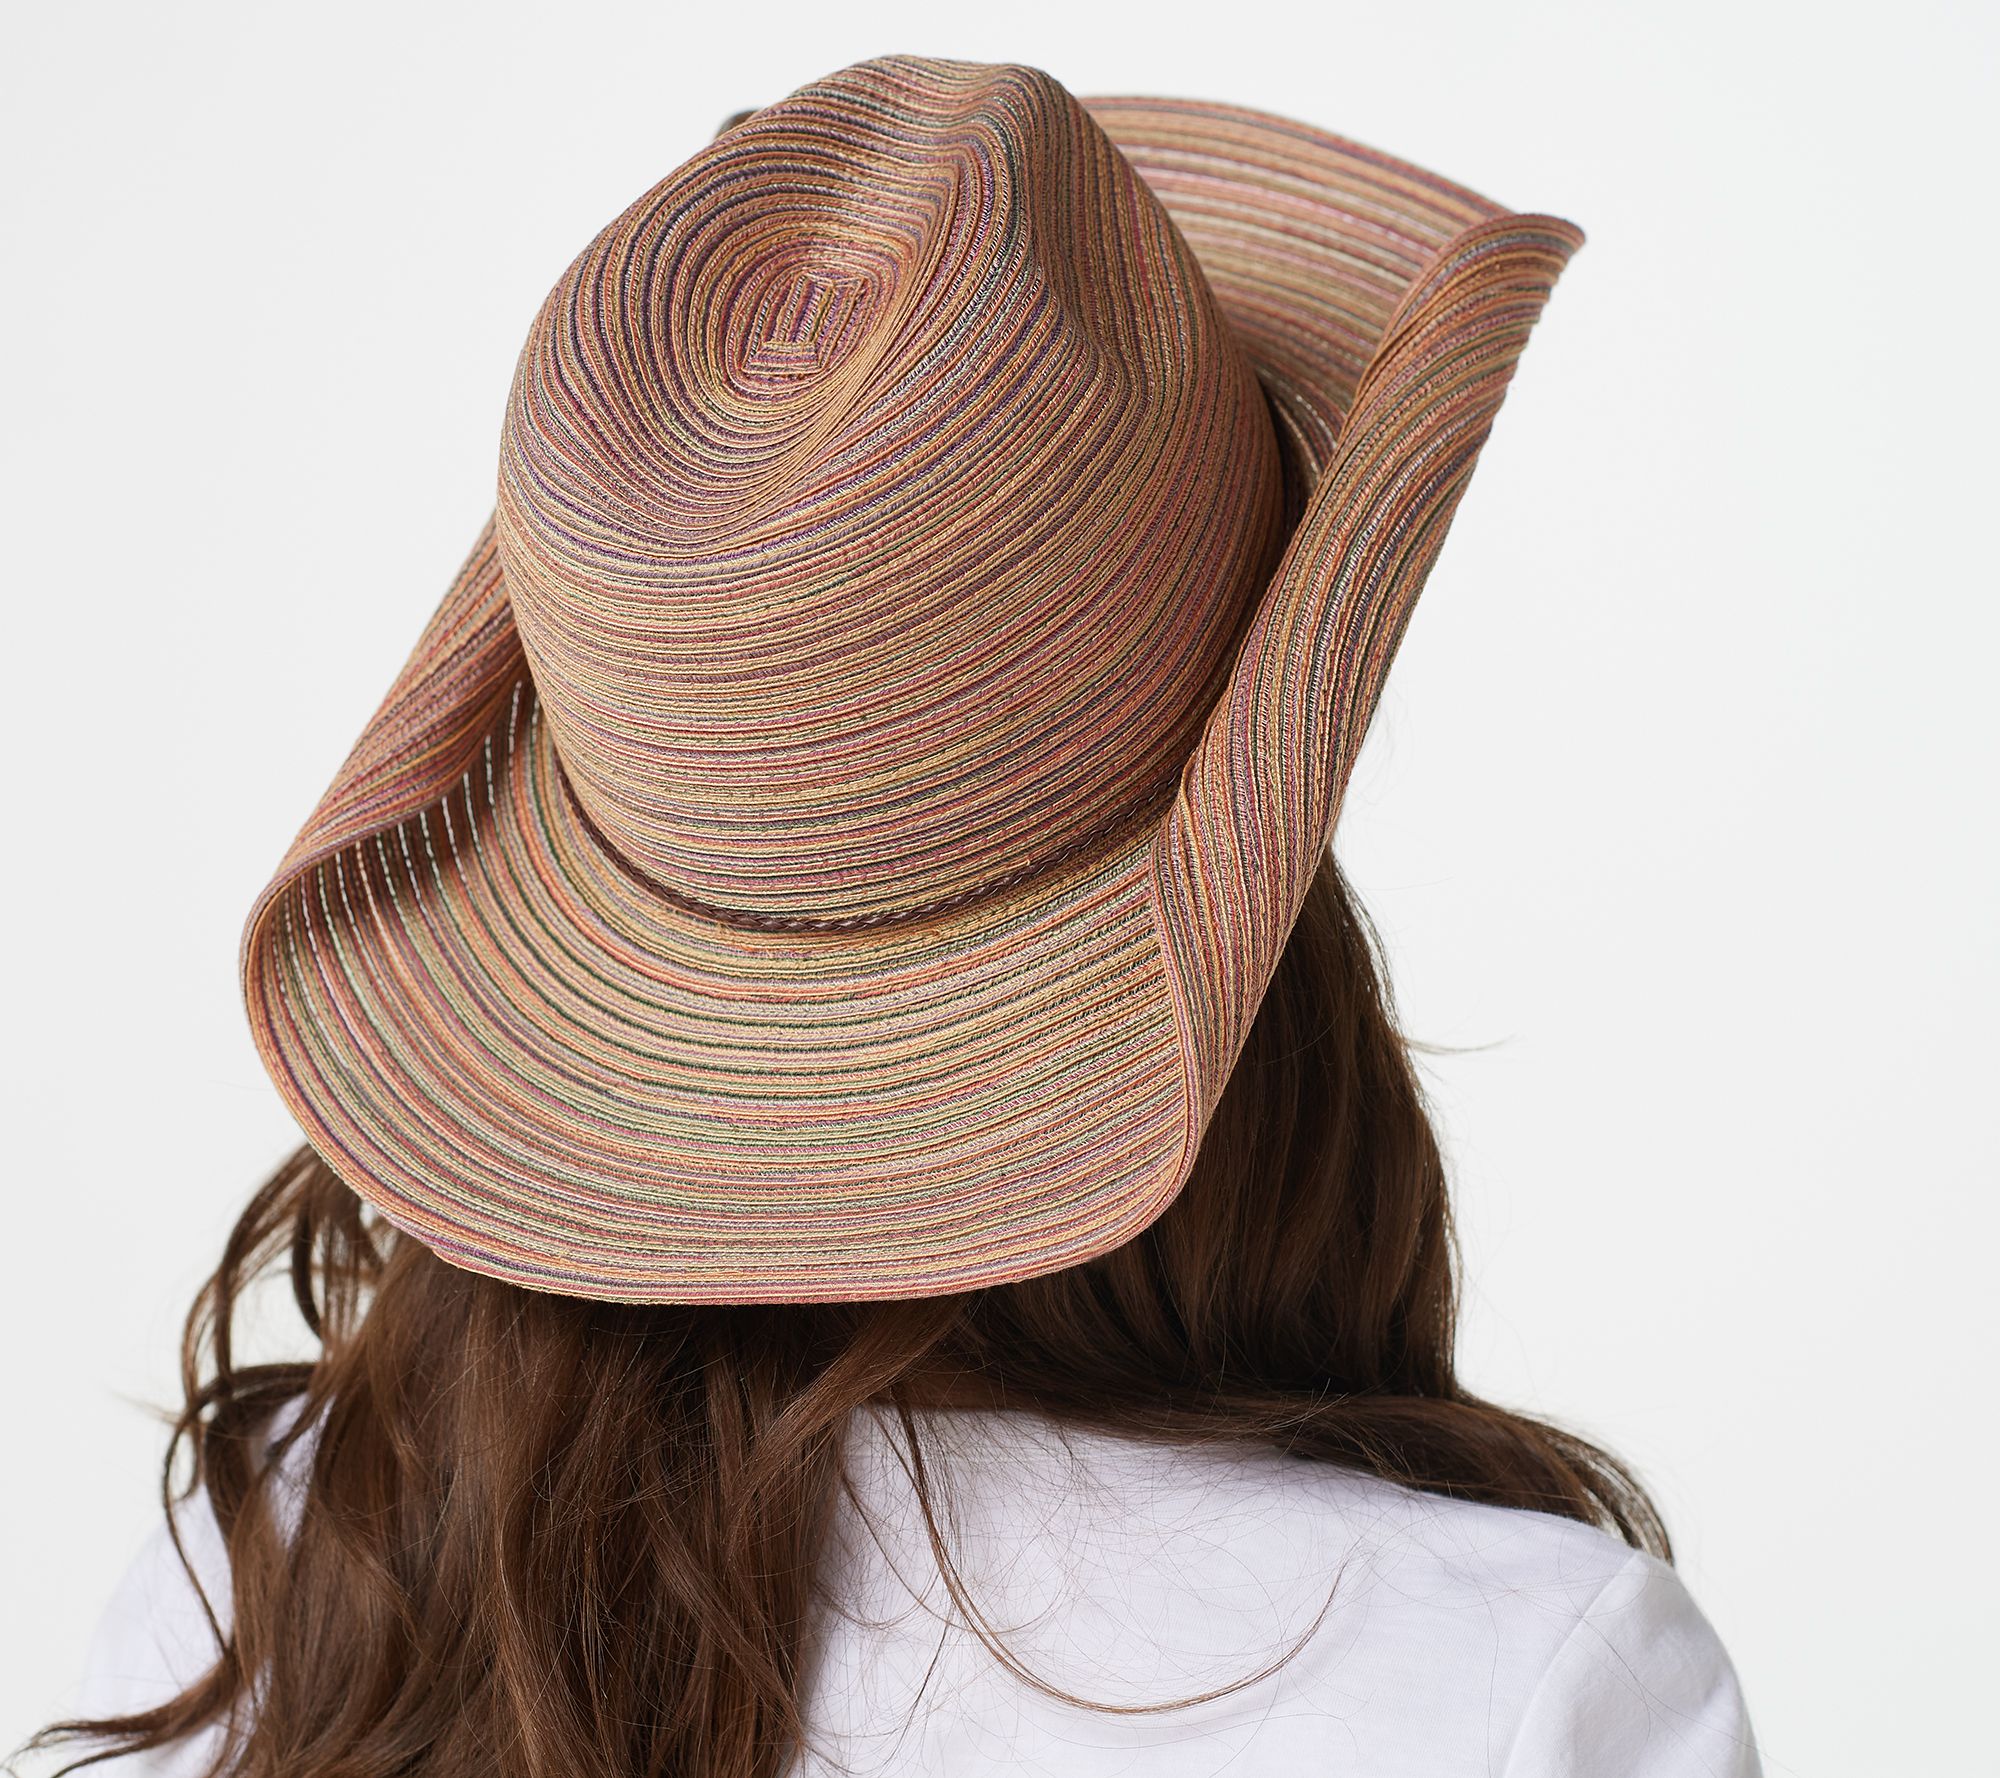 San Diego Hat Company Womens Crocheted Raffia Cowboy Hat